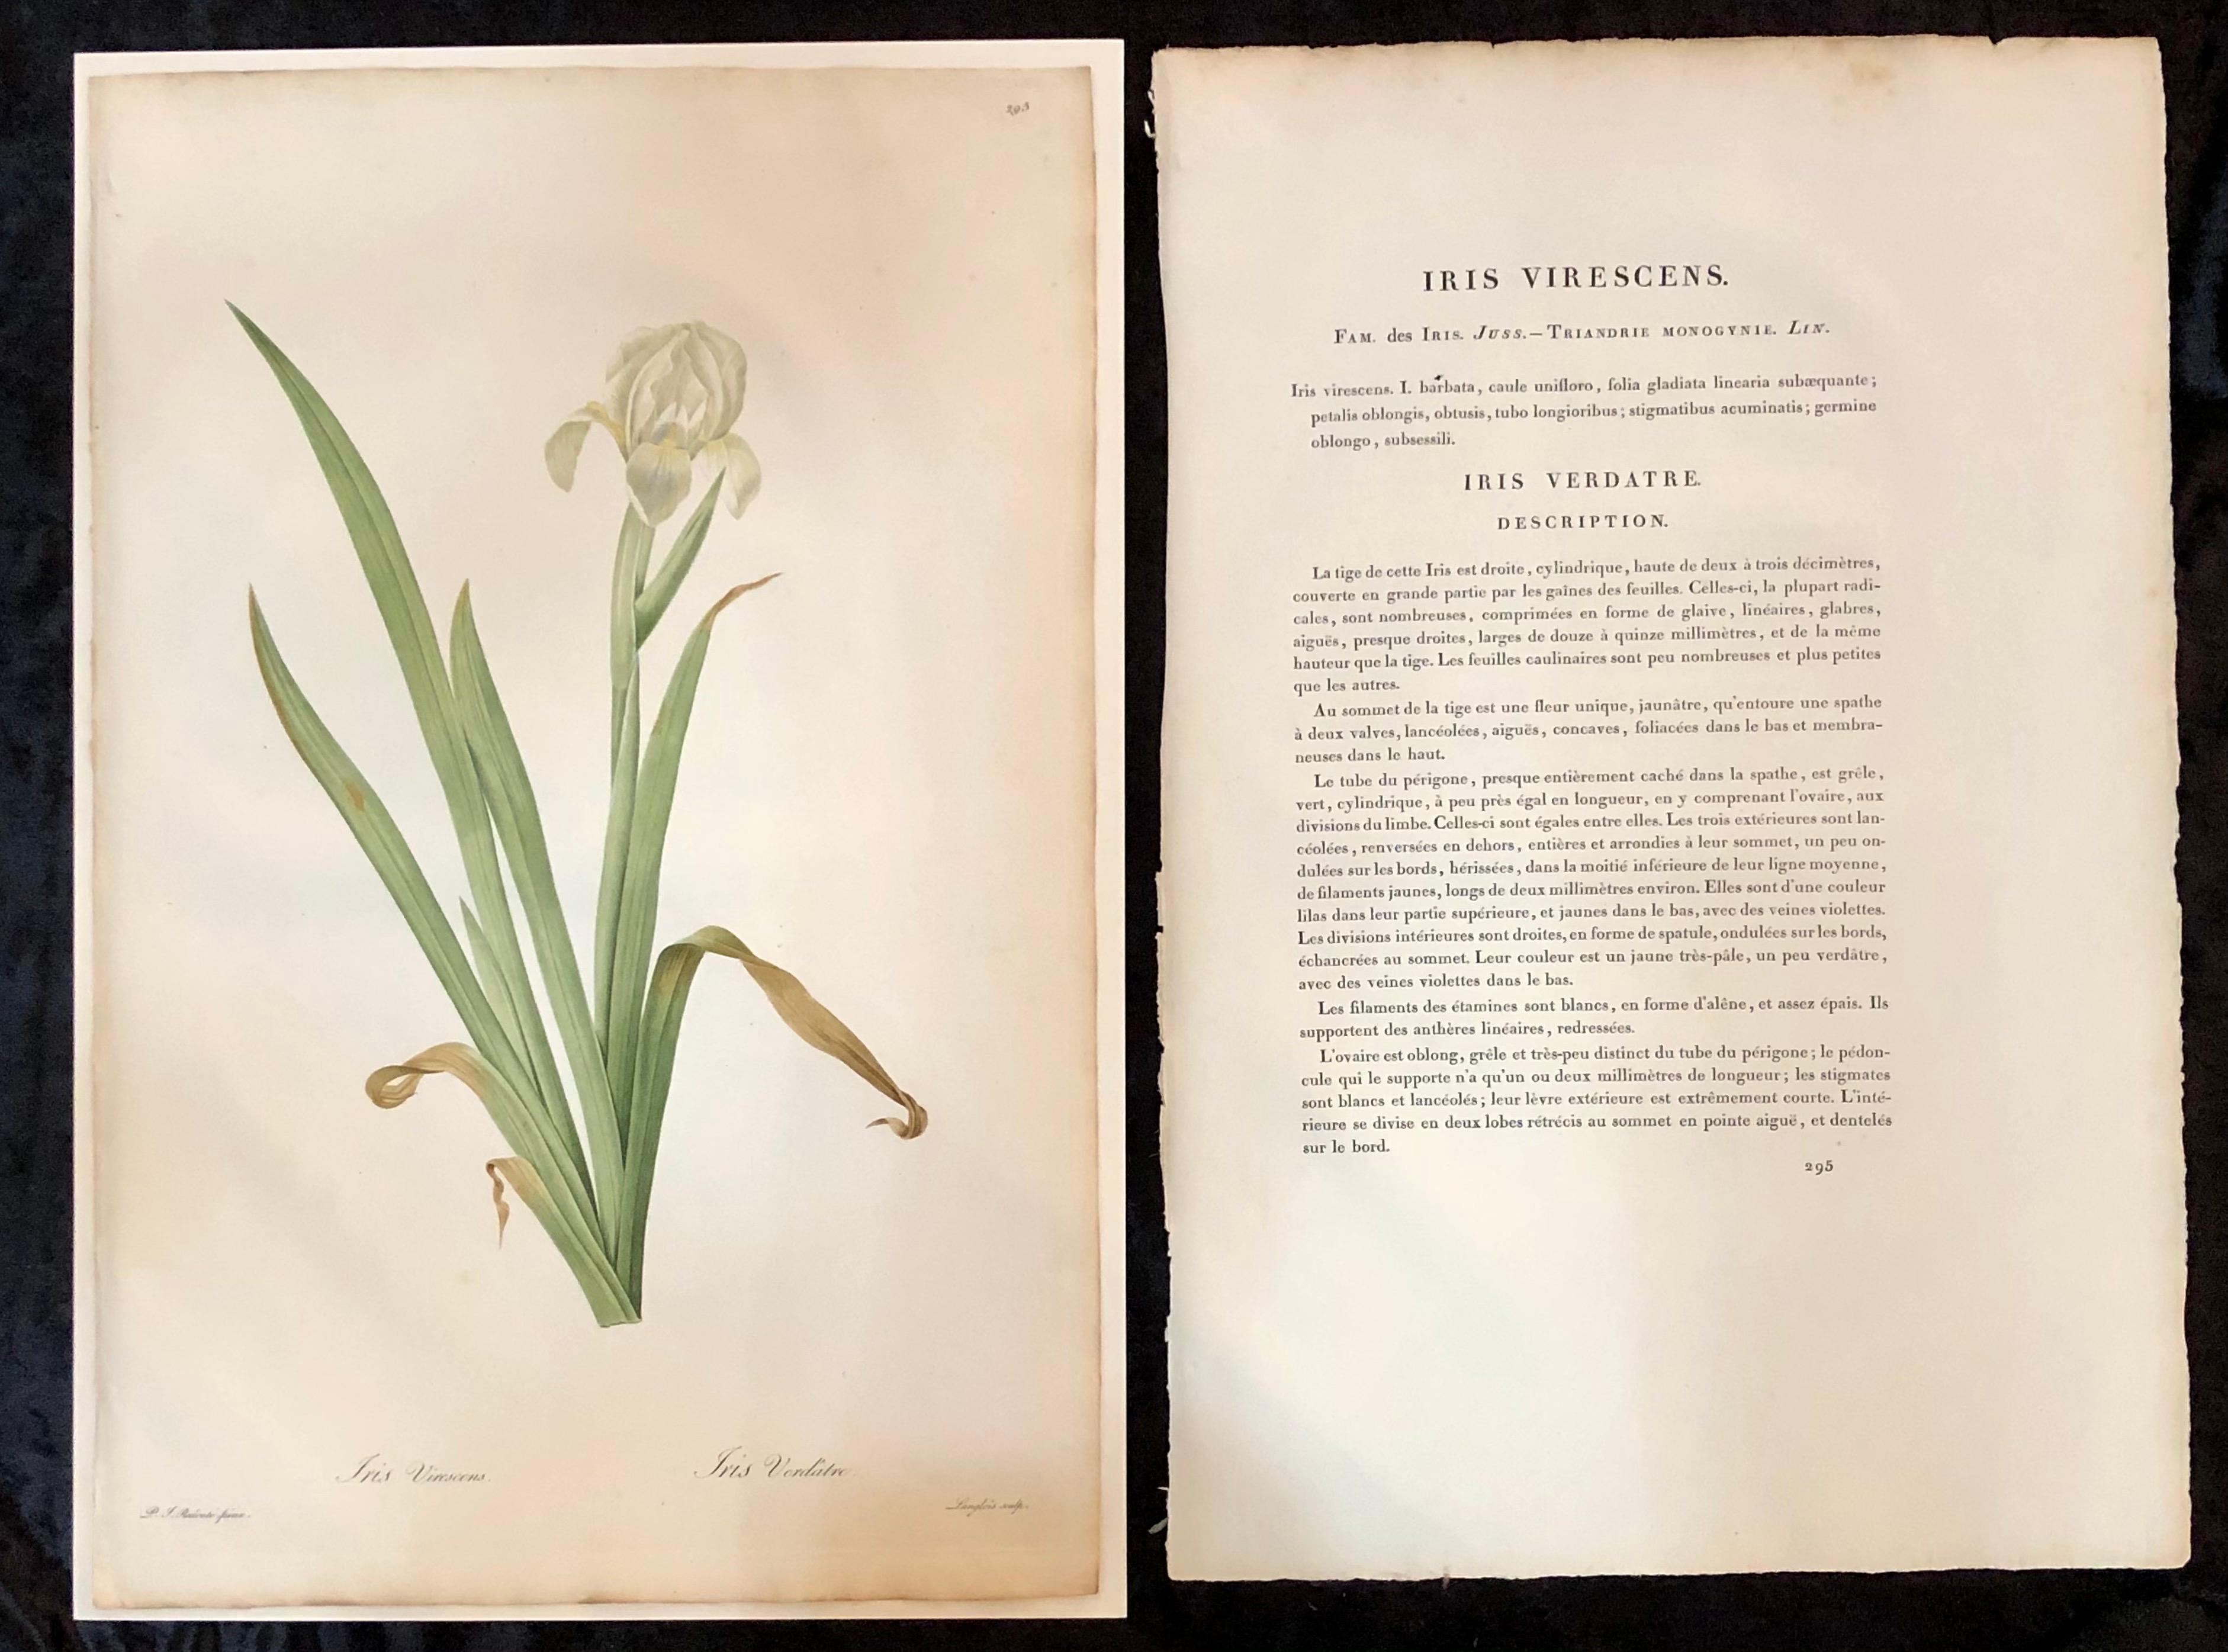 Iris Virescens gravure coloriée à la main signée et numérotée P. J. Redoute.
L'un des éléments d'un ensemble de neuf œuvres florales de grande taille, impressionnantes et bien peintes, chacune ayant une histoire et une littérature au revers.
Le